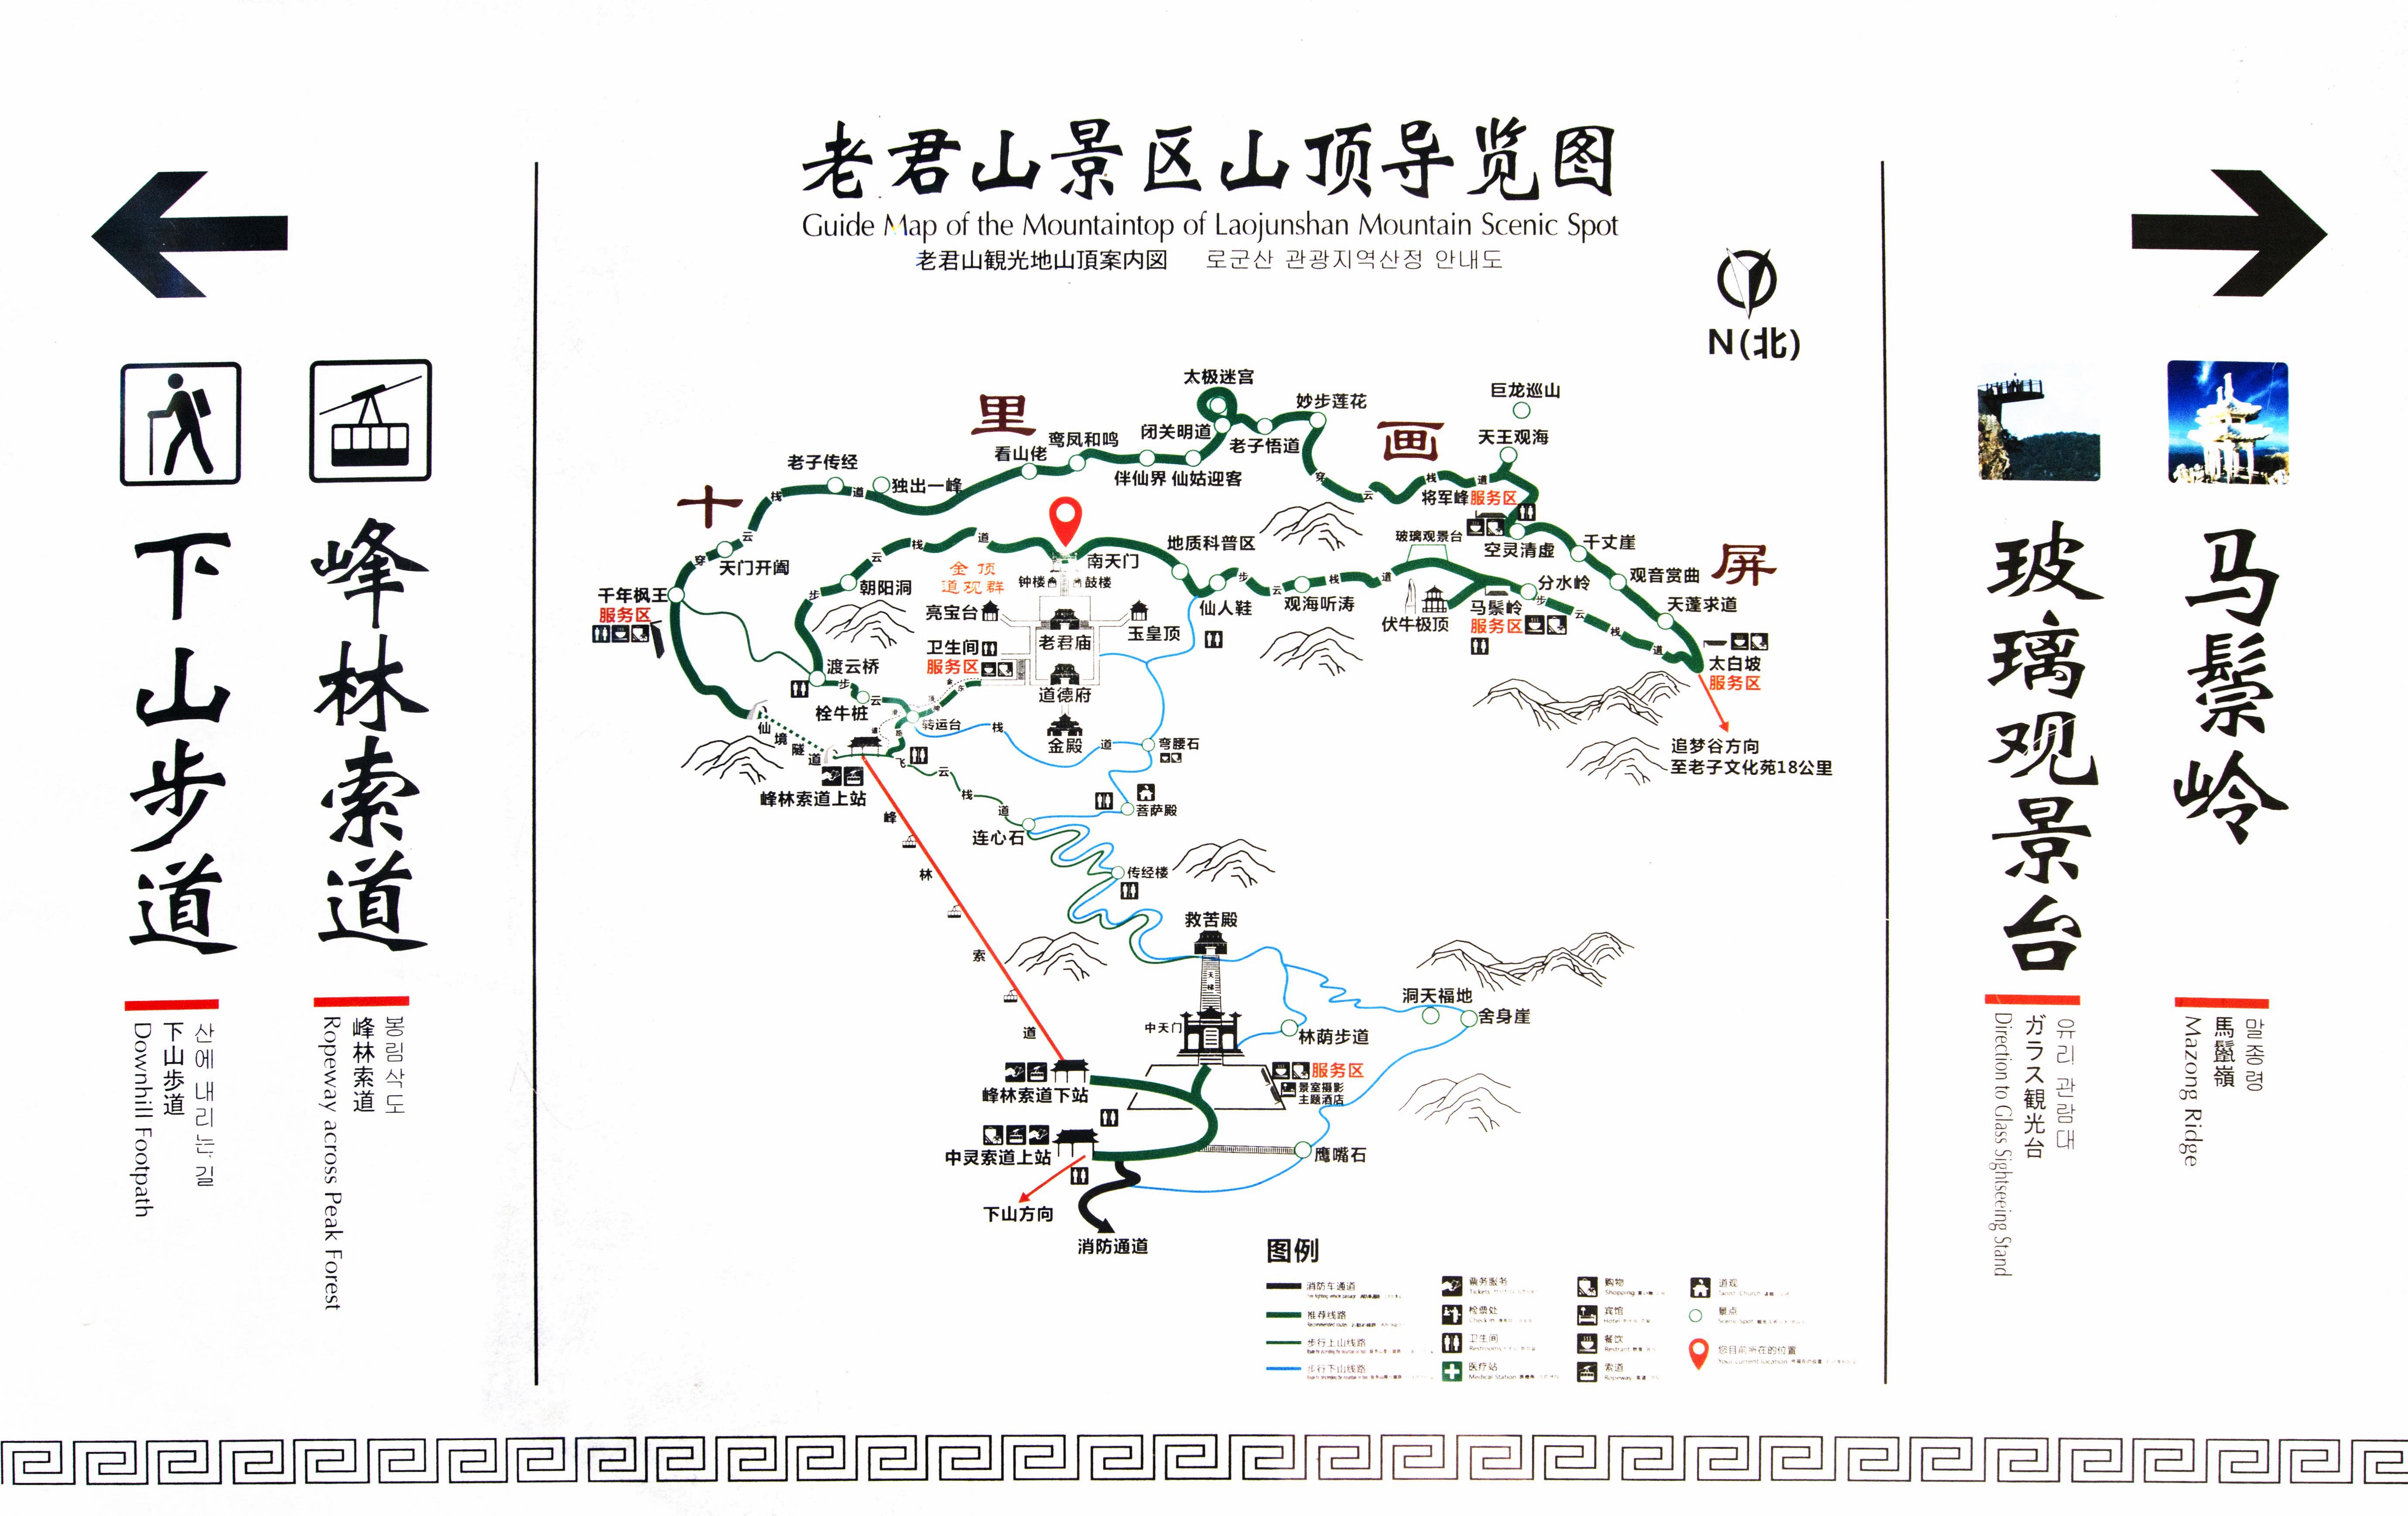 老君山旅游路线示意图图片